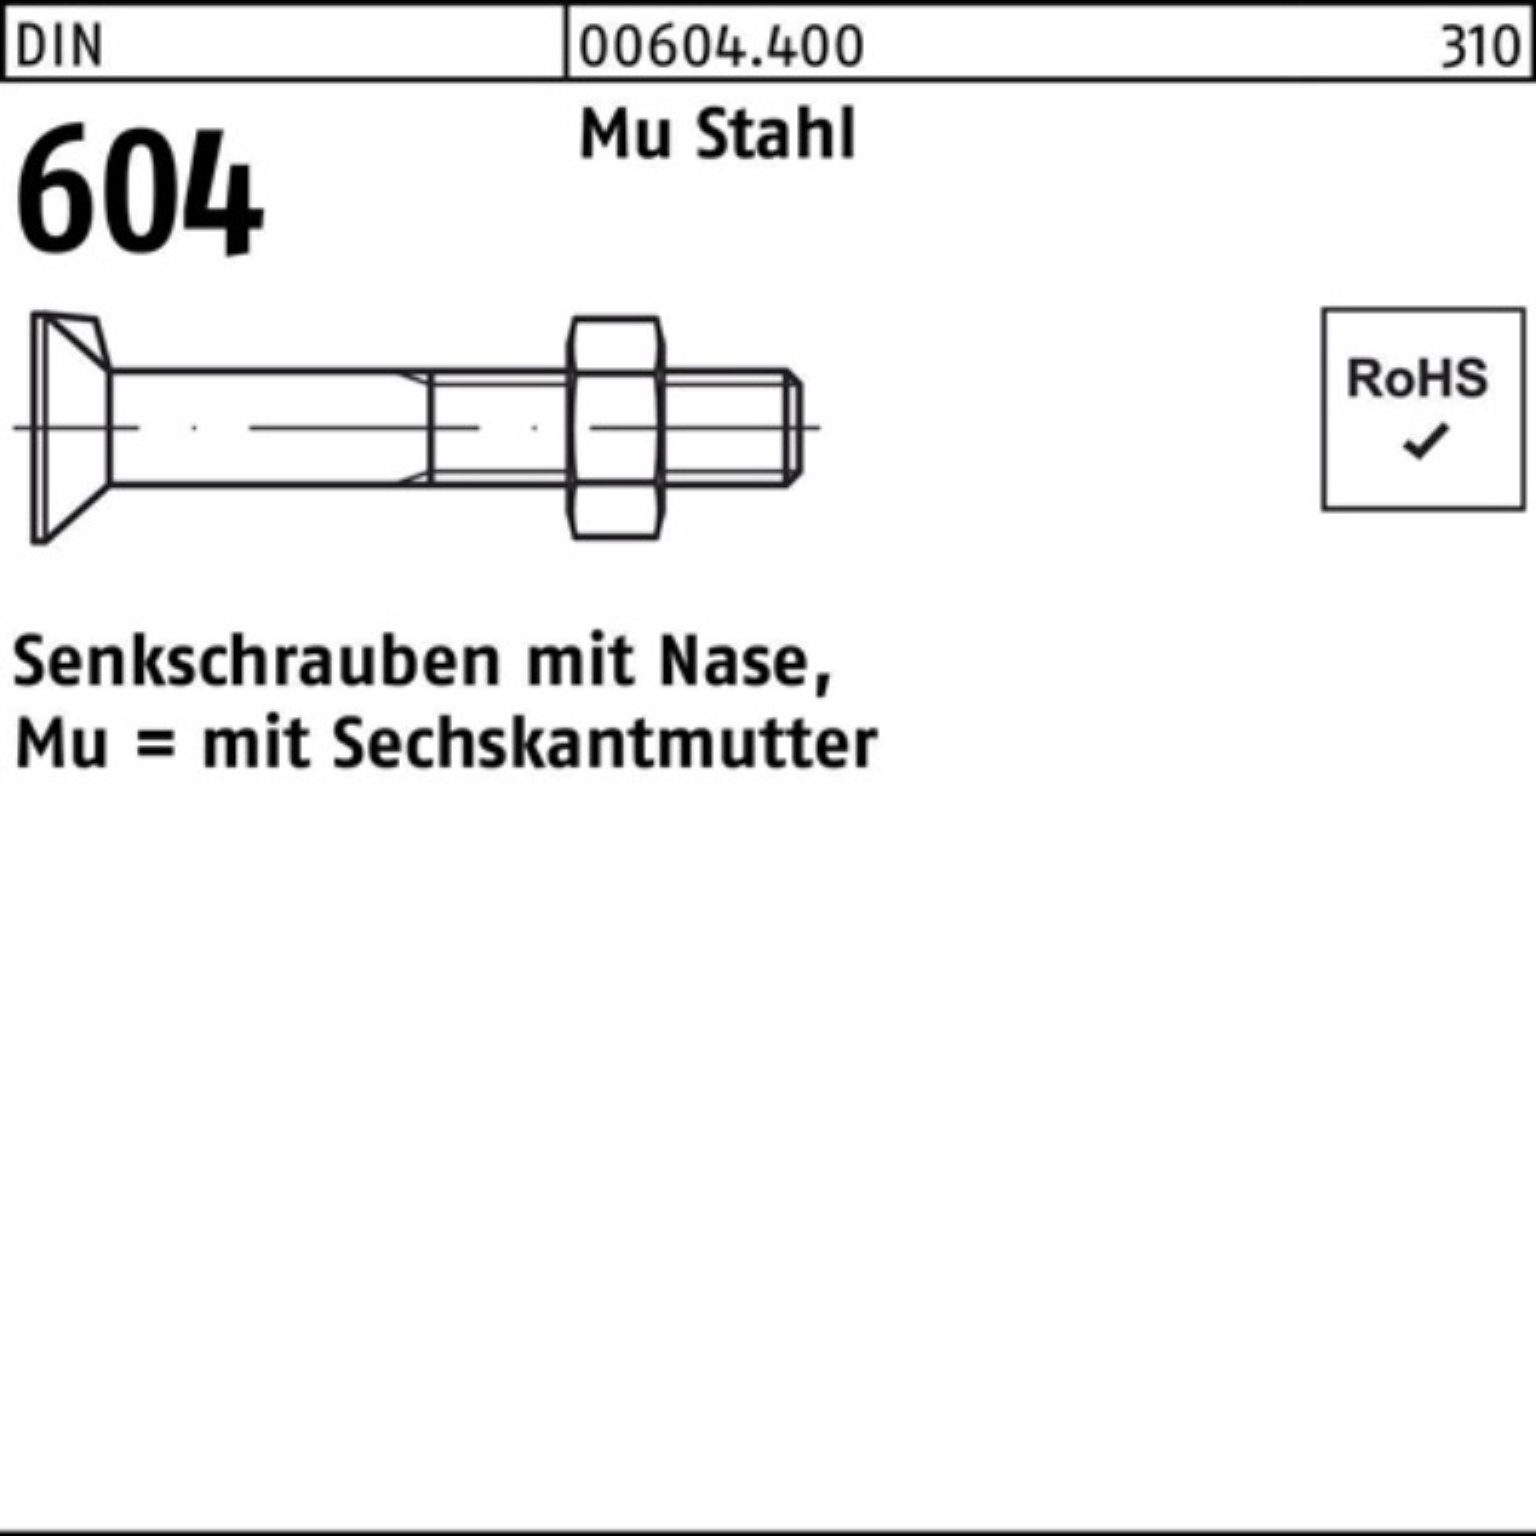 Reyher Senkschraube Pack Stahl DIN 604 M12x 100er 5 90 Senkschraube Mu 4.6 Nase/6-ktmutter